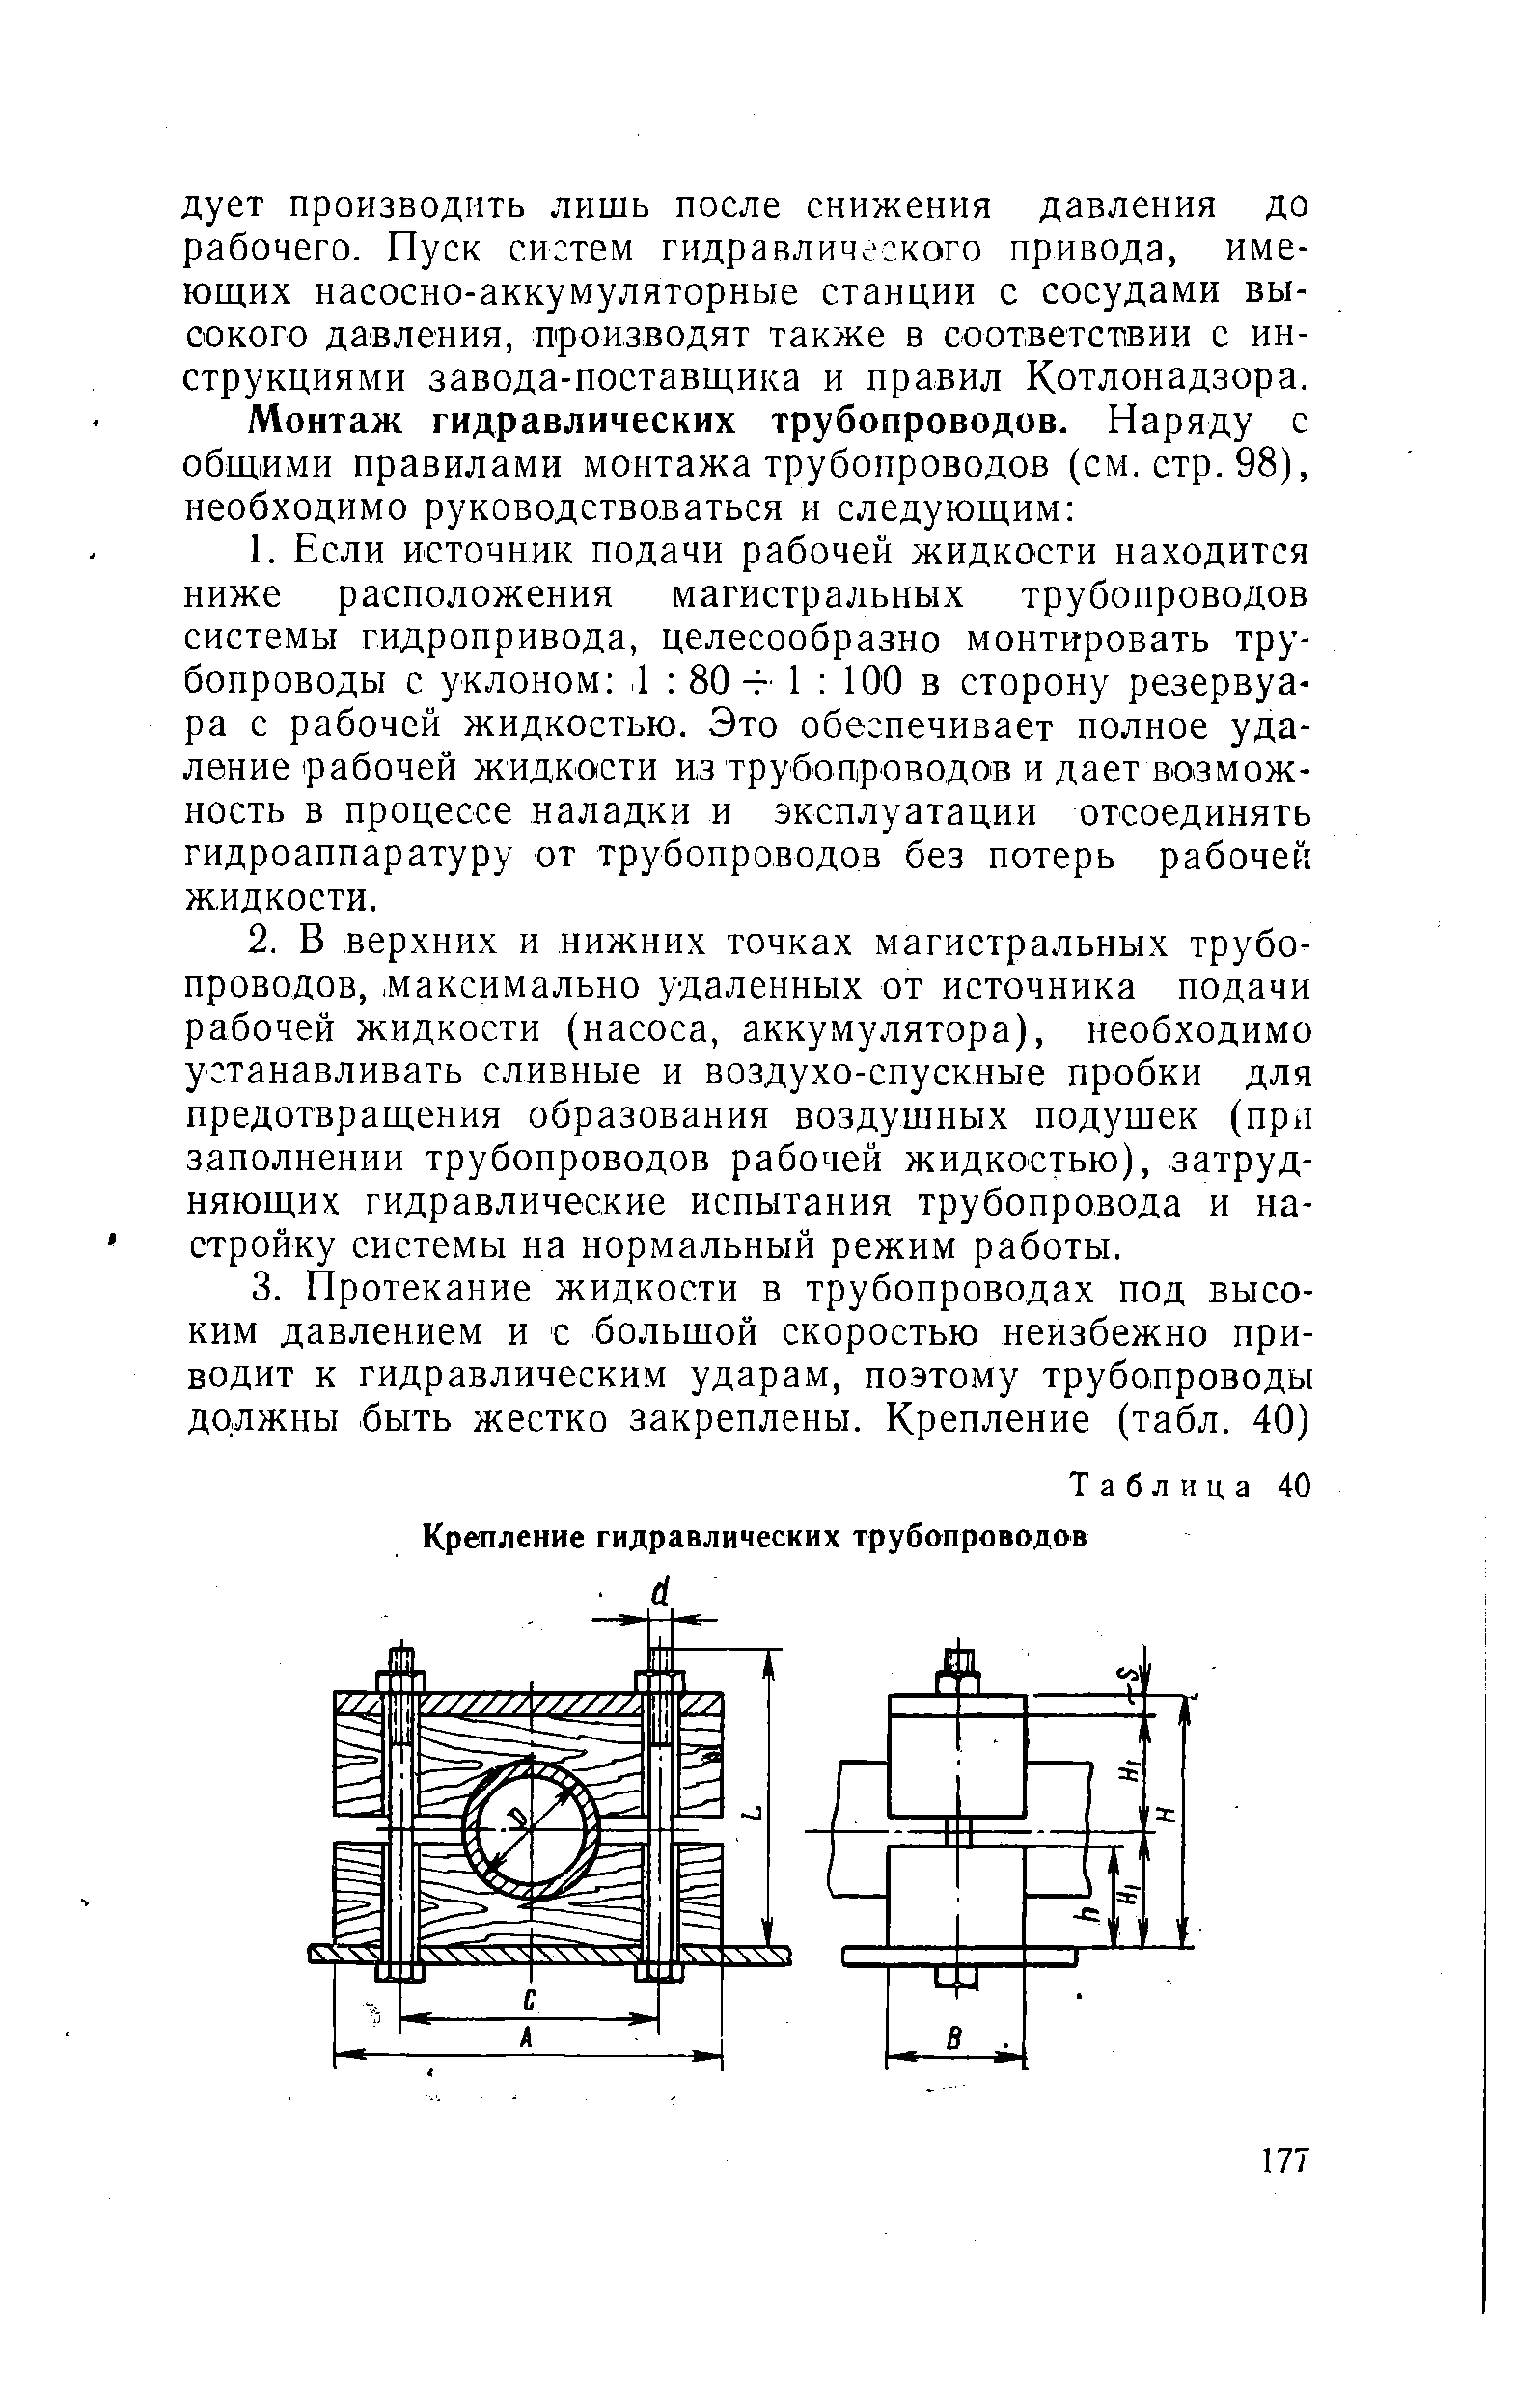 Таблица 40 Крепление гидравлических трубопроводов
